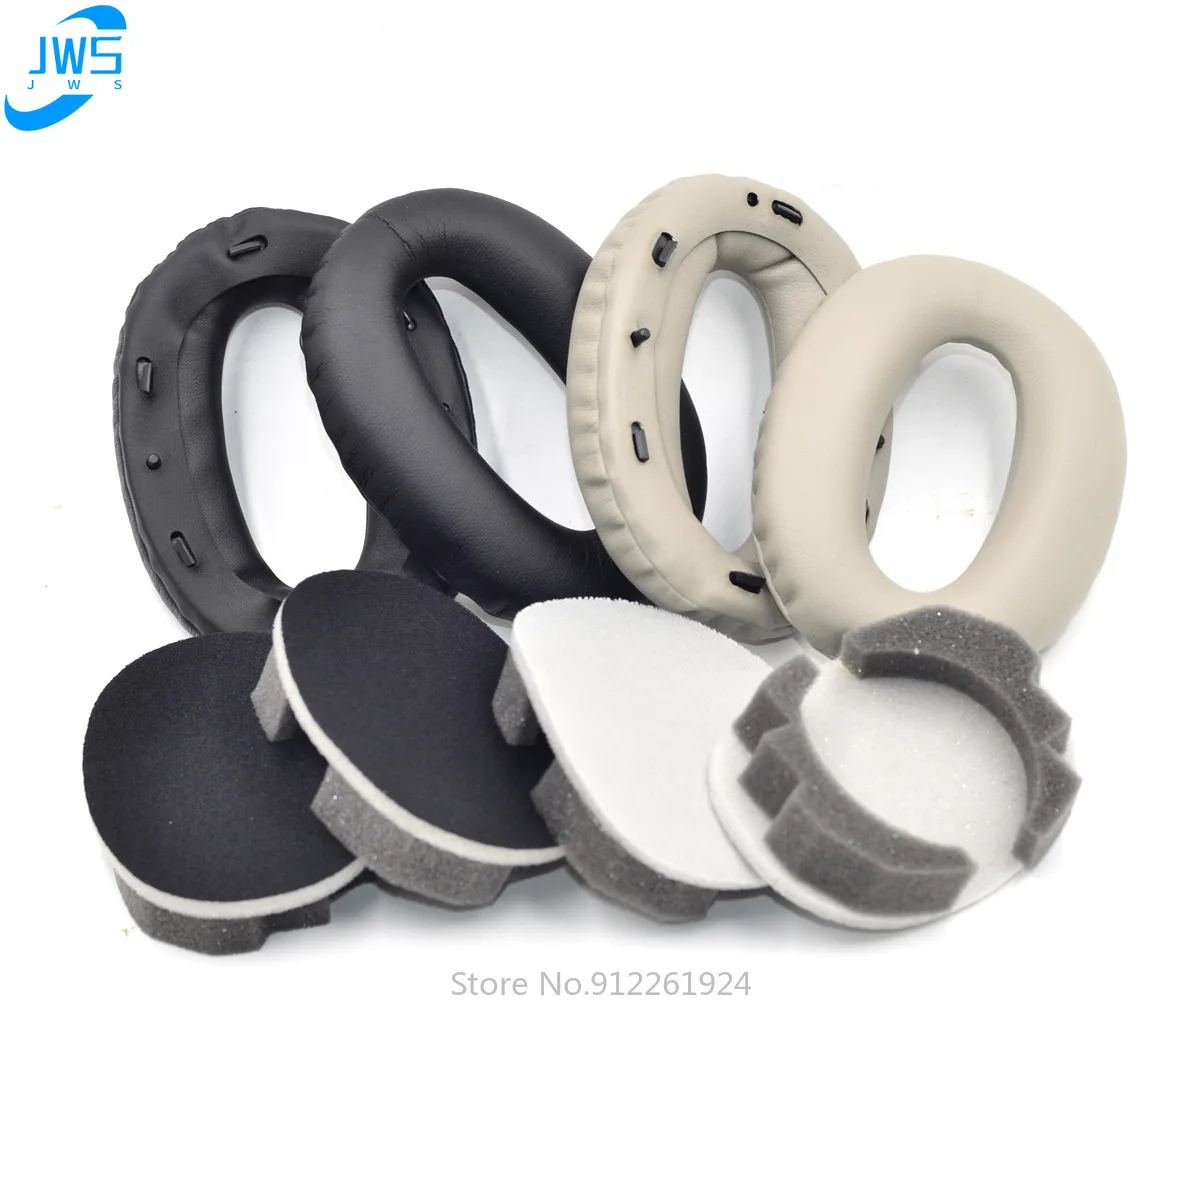 Almohadillas de repuesto para los oídos, funda de cojín compatible con Sony MDR-1000X, WH-1000XM3, WH-1000XM2, almohadillas de espuma viscoelástica para auriculares